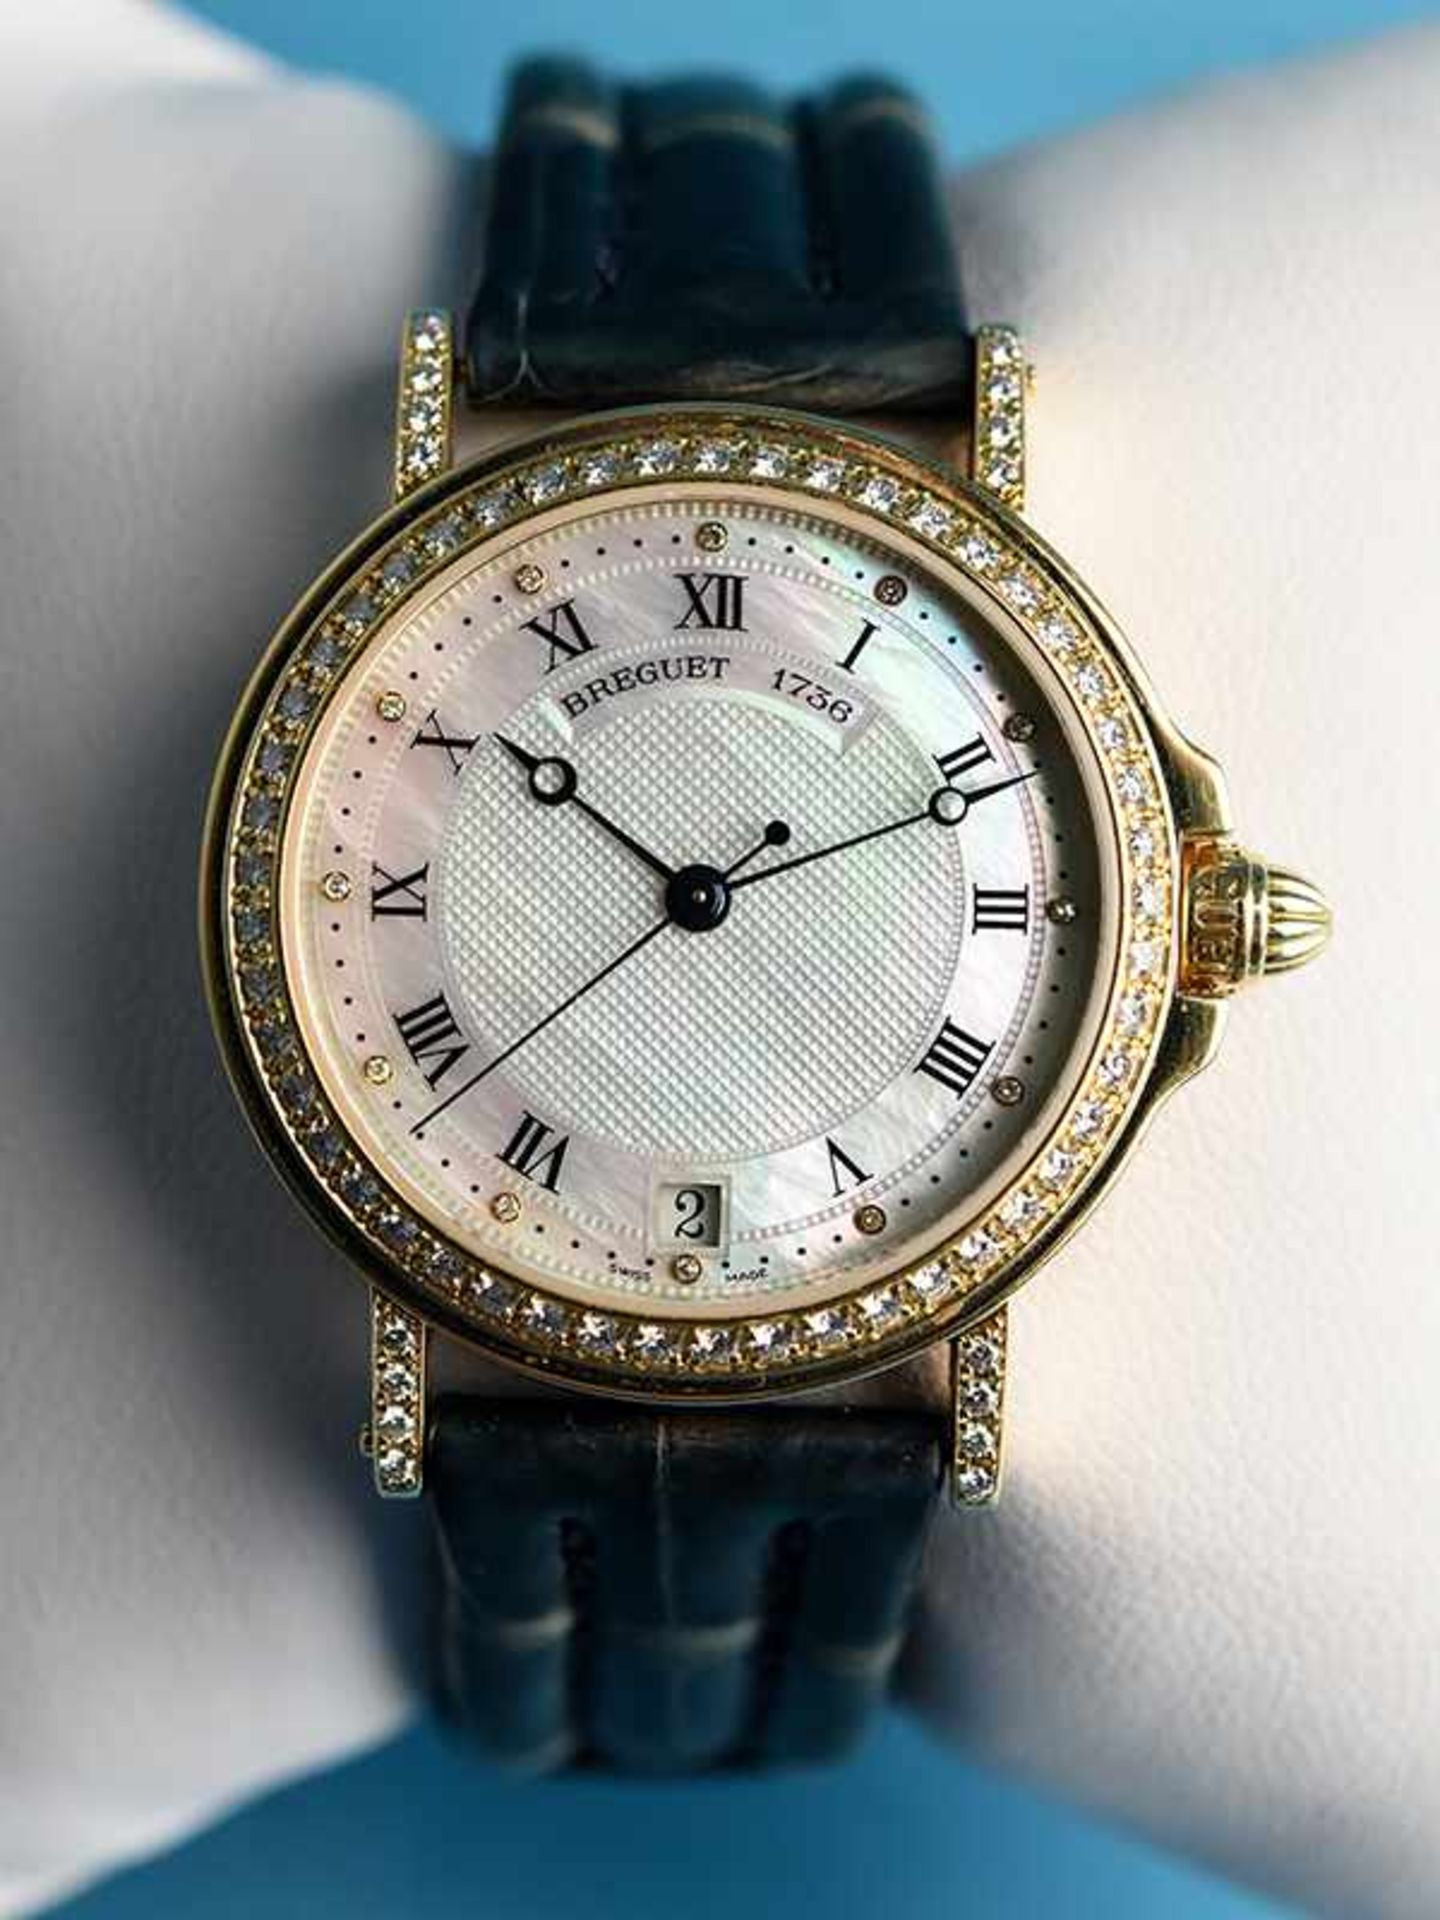 Armbanduhr mit 65 Brillanten, zusammen ca. 0,72 ct, bezeichnet "BREGUET 1736 - Modell MARINA, 20.